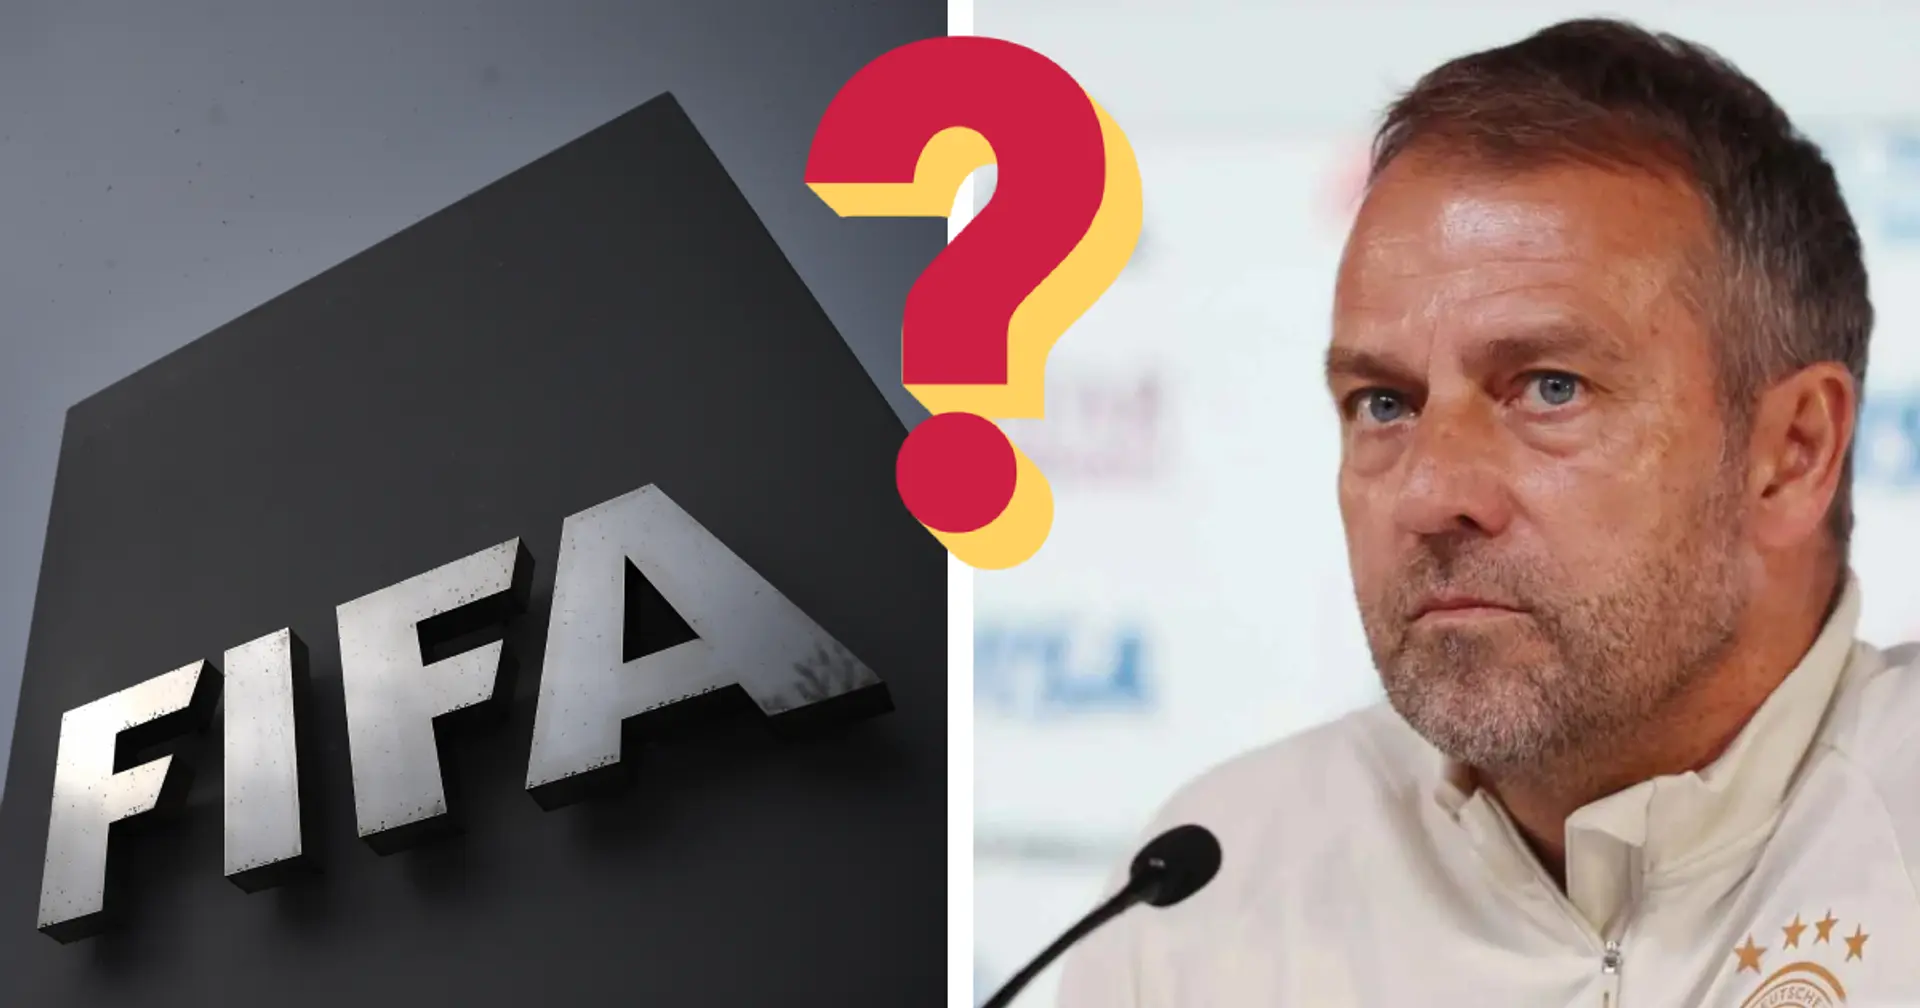 FIFA ermittelt gegen den DFB - mit der "Mund zu"-Geste hat das allerdings nichts zu tun